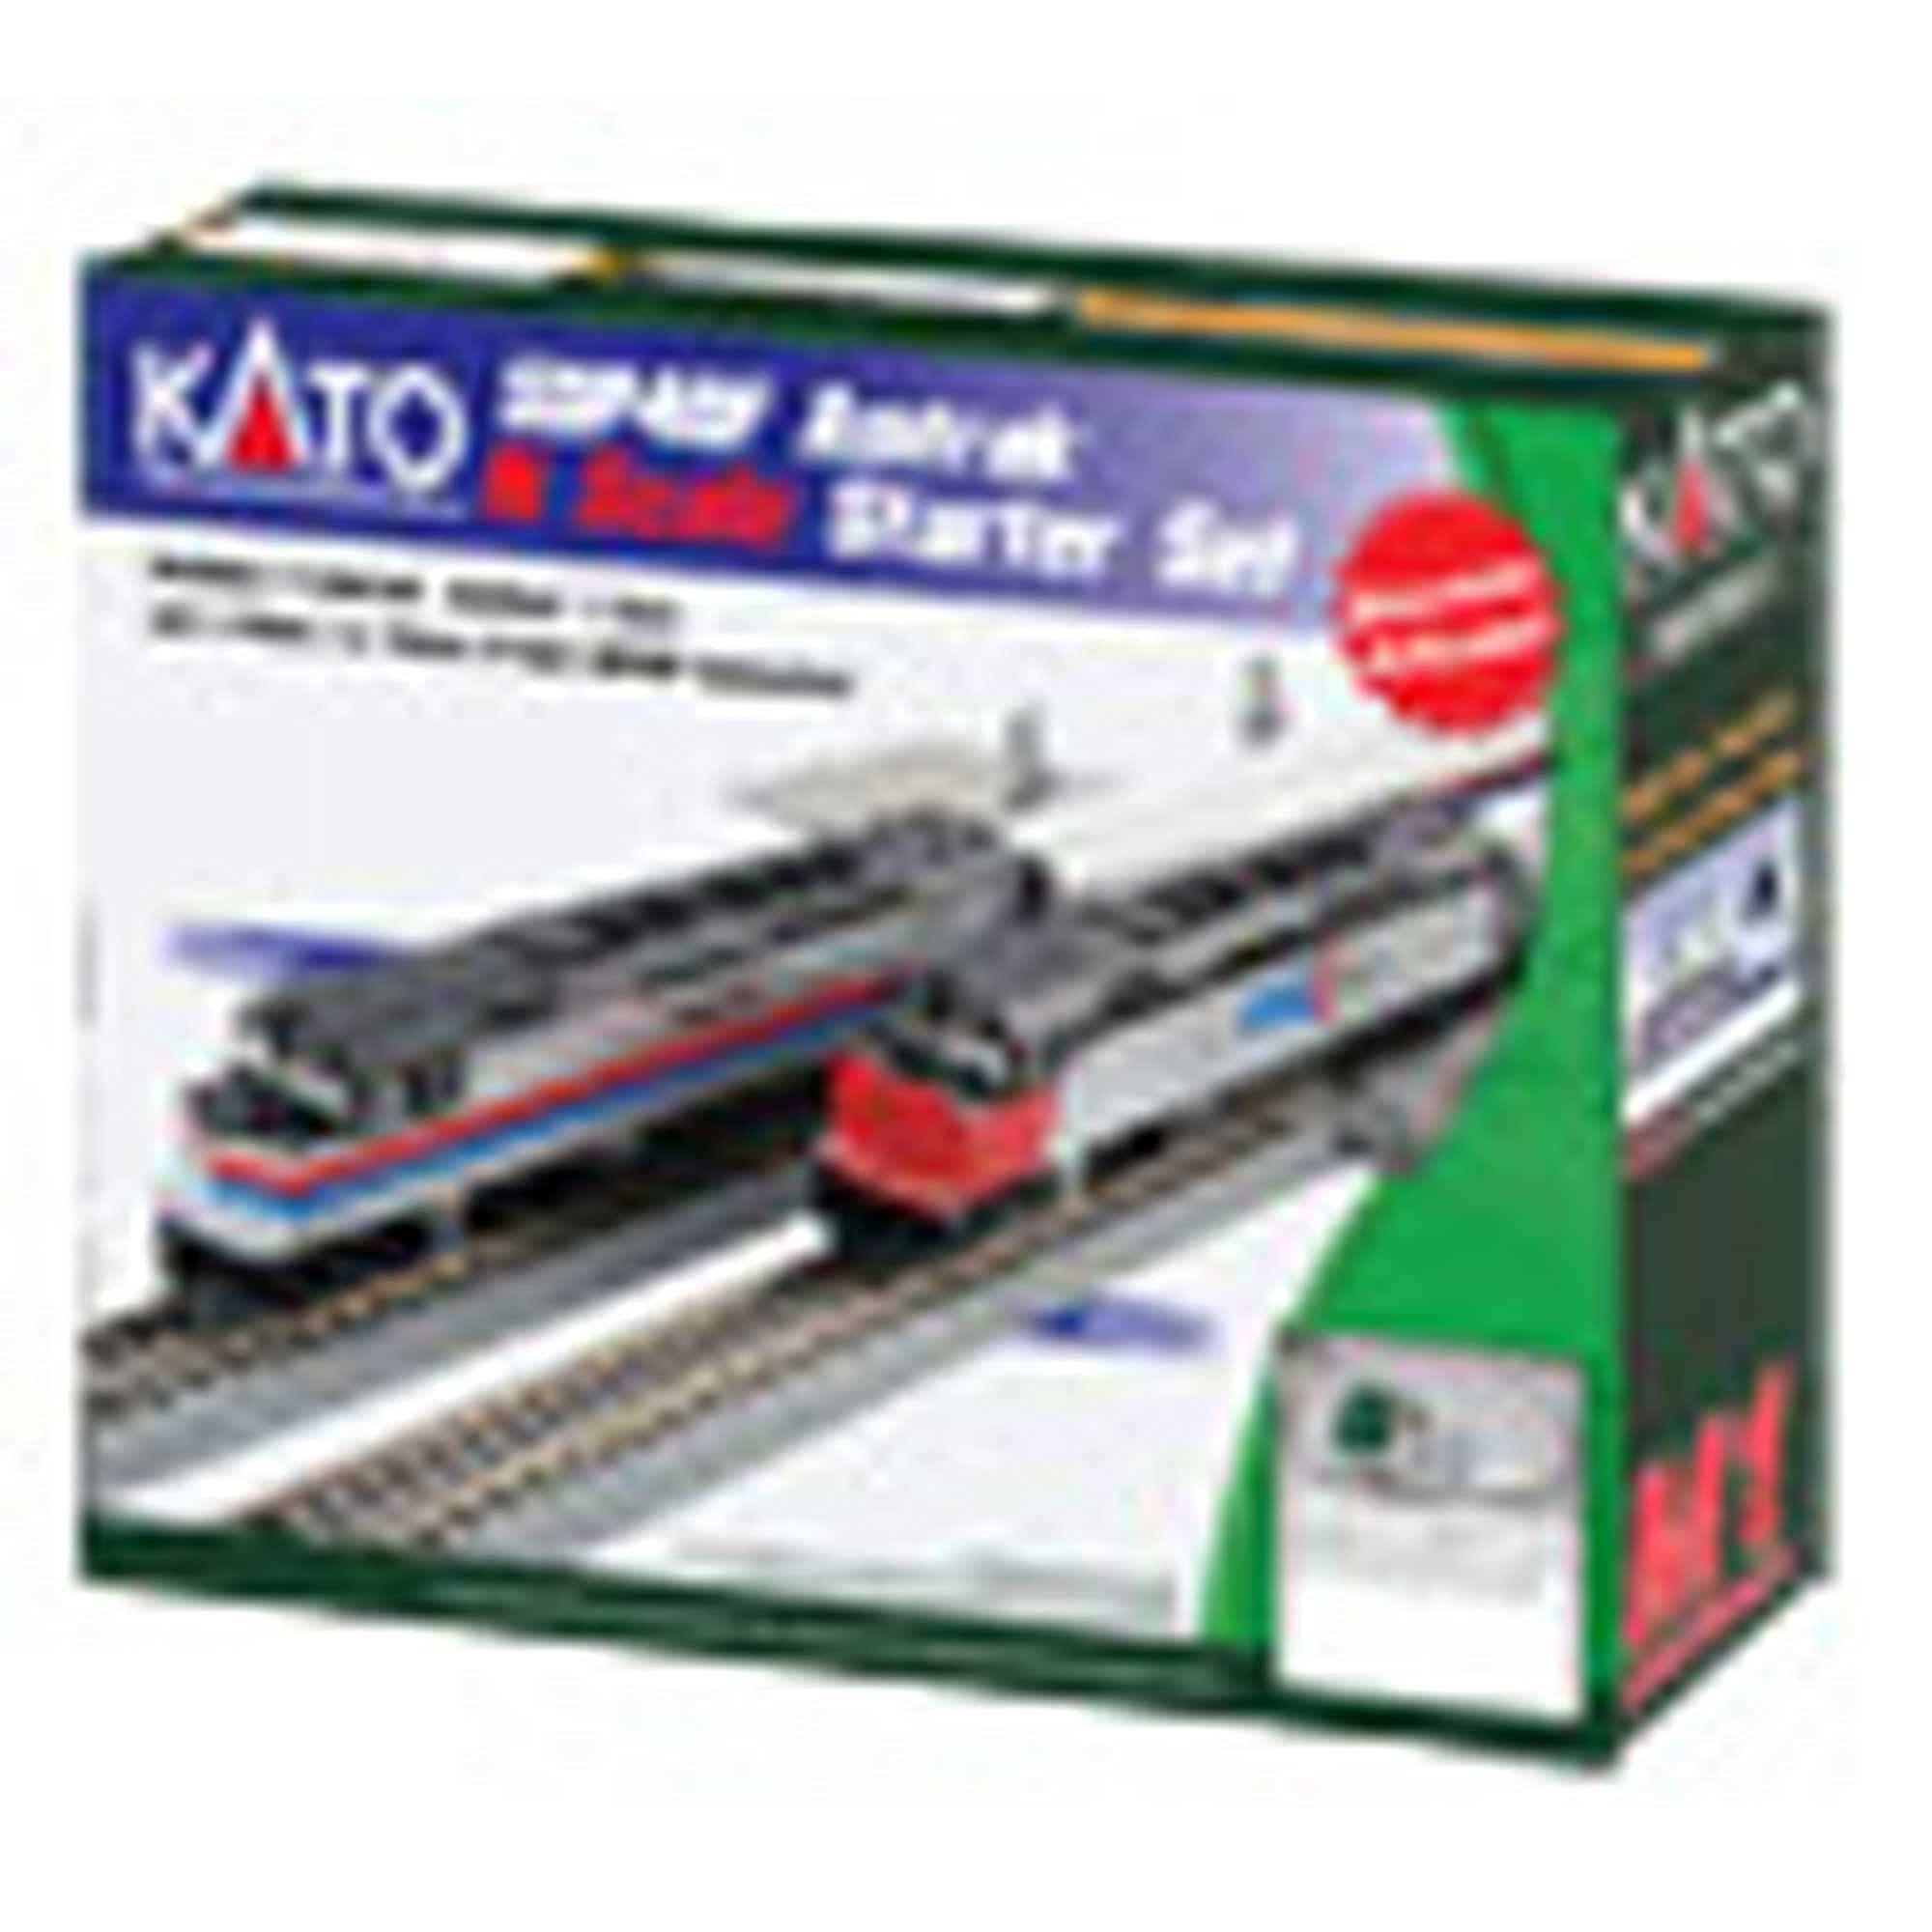 Kato N Passenger Amtrak Starter Set